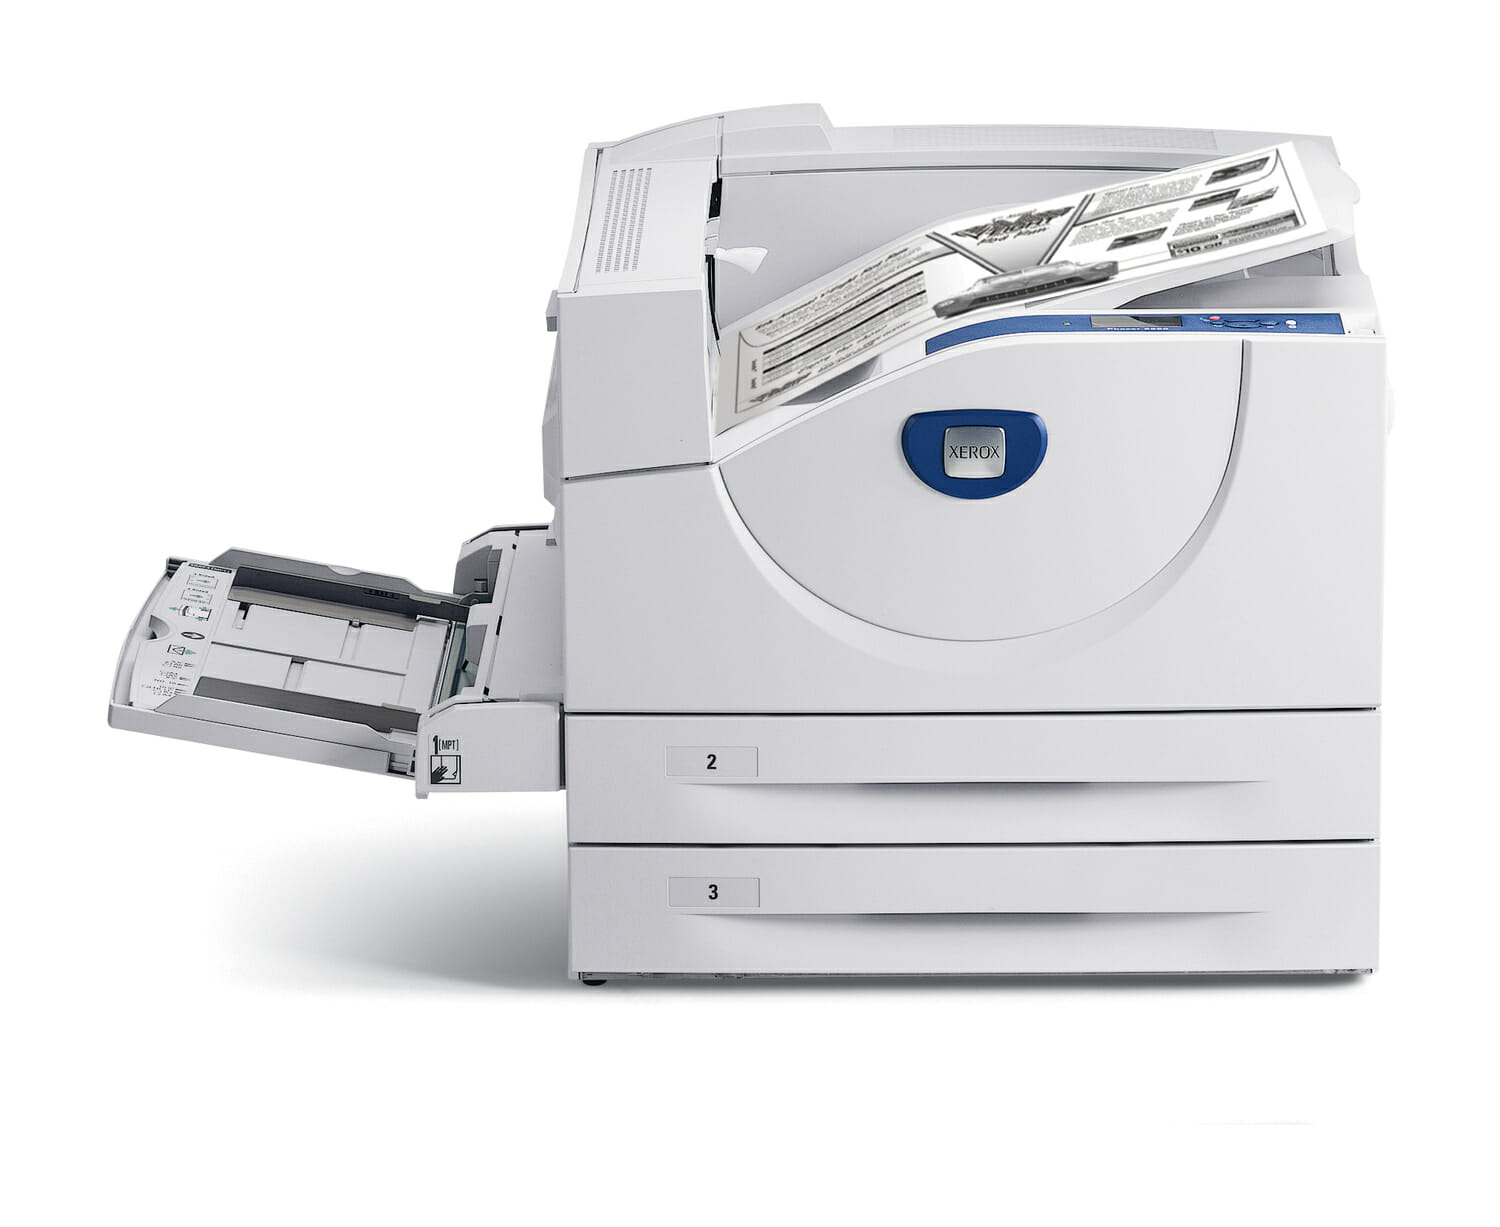 Xerox Phaser 5550 Schwarzweiß-Laserdrucker S/W A3 50 Seiten pro Minute, Netzwerk